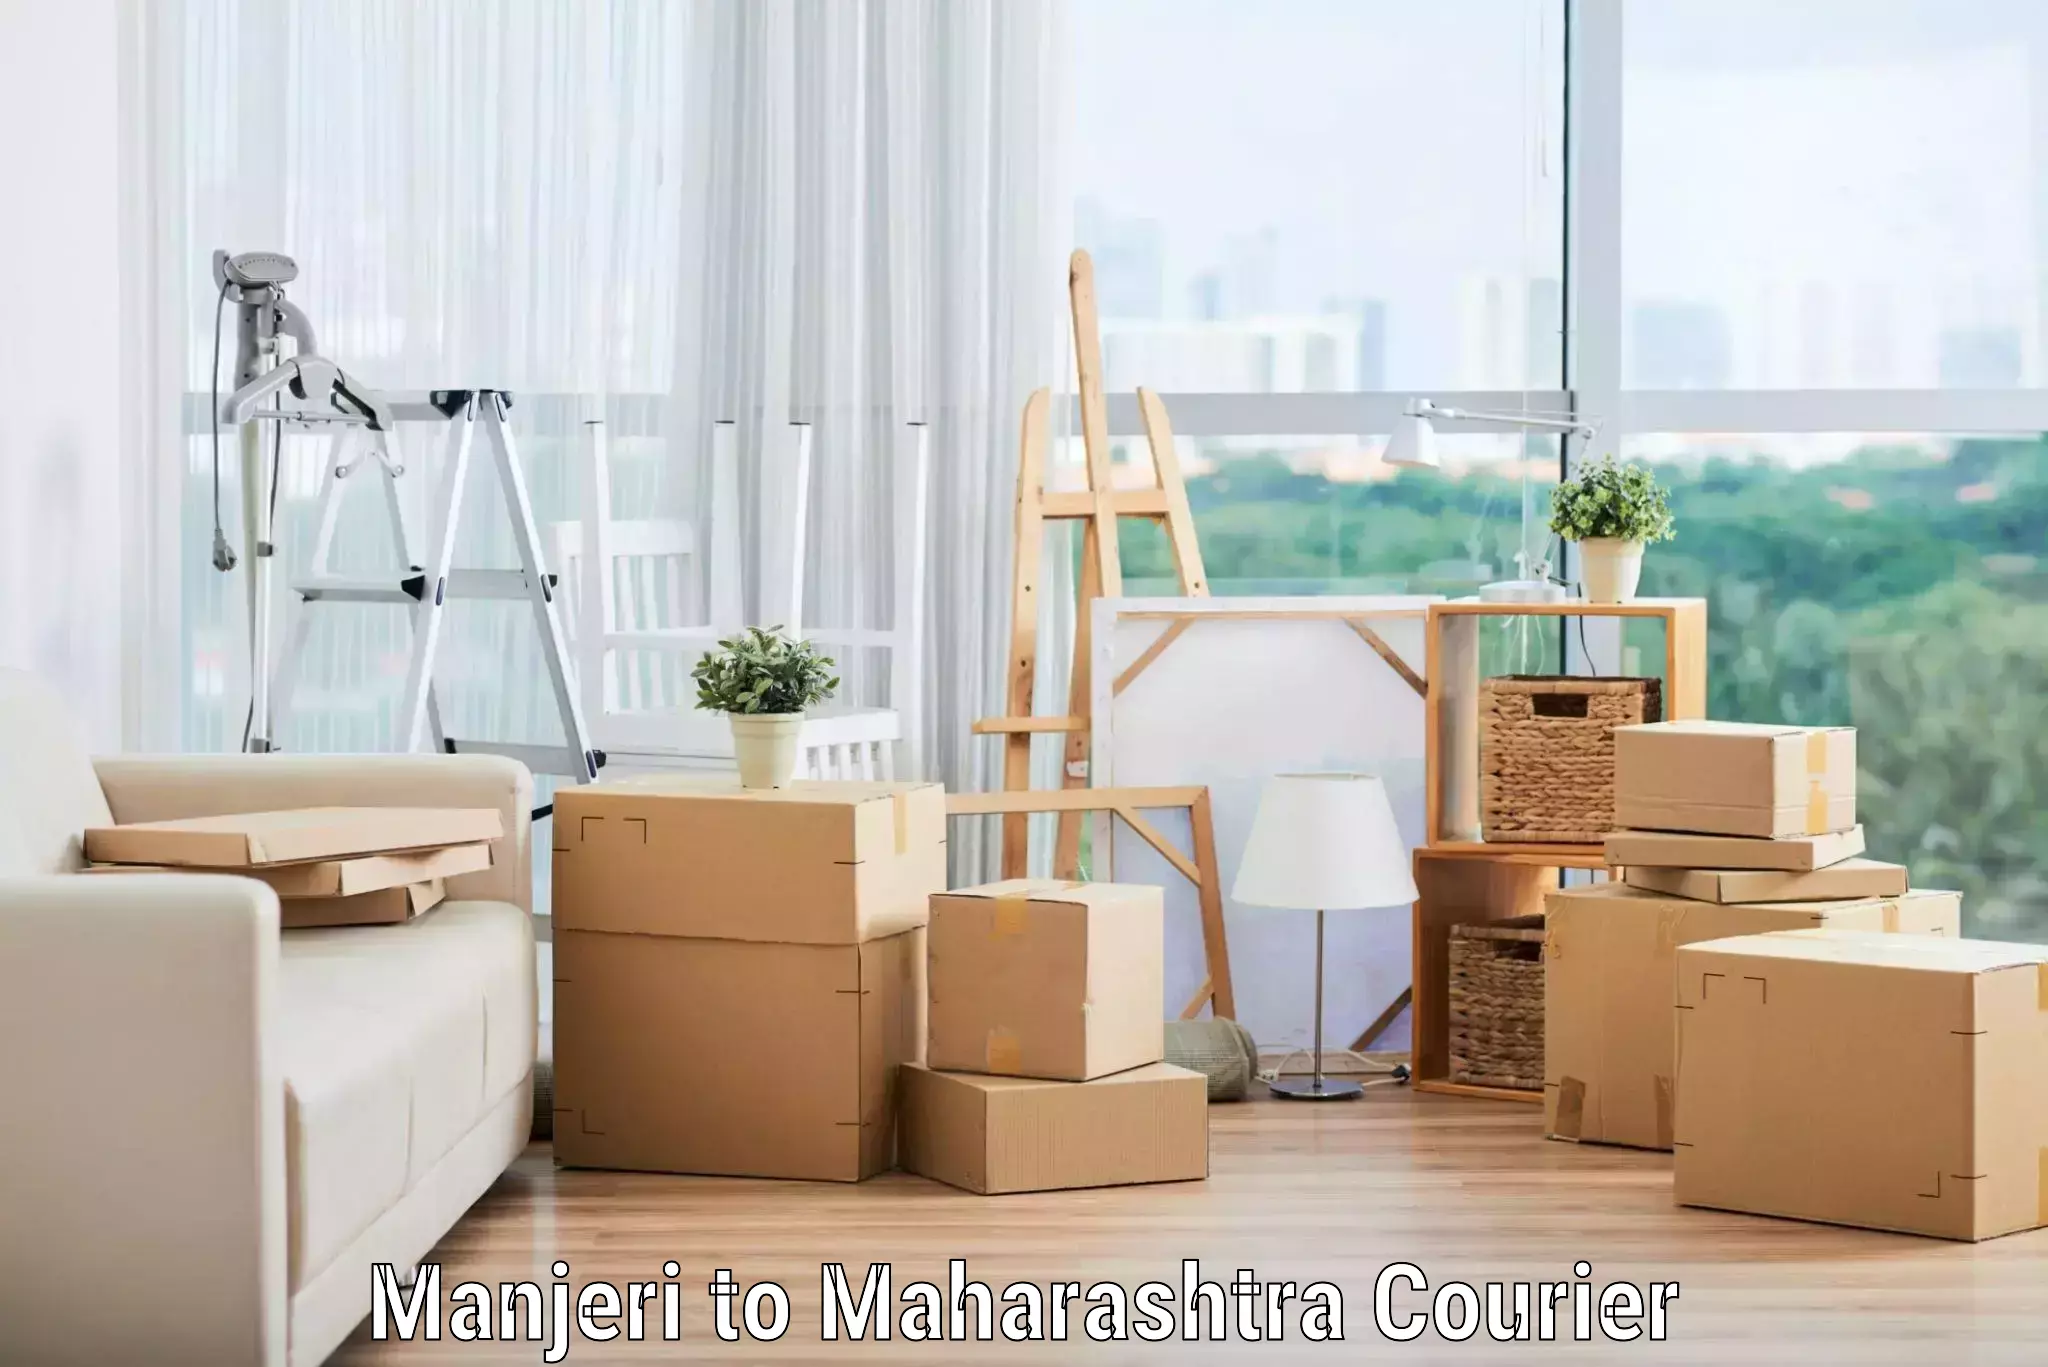 Trusted moving company Manjeri to Maharashtra